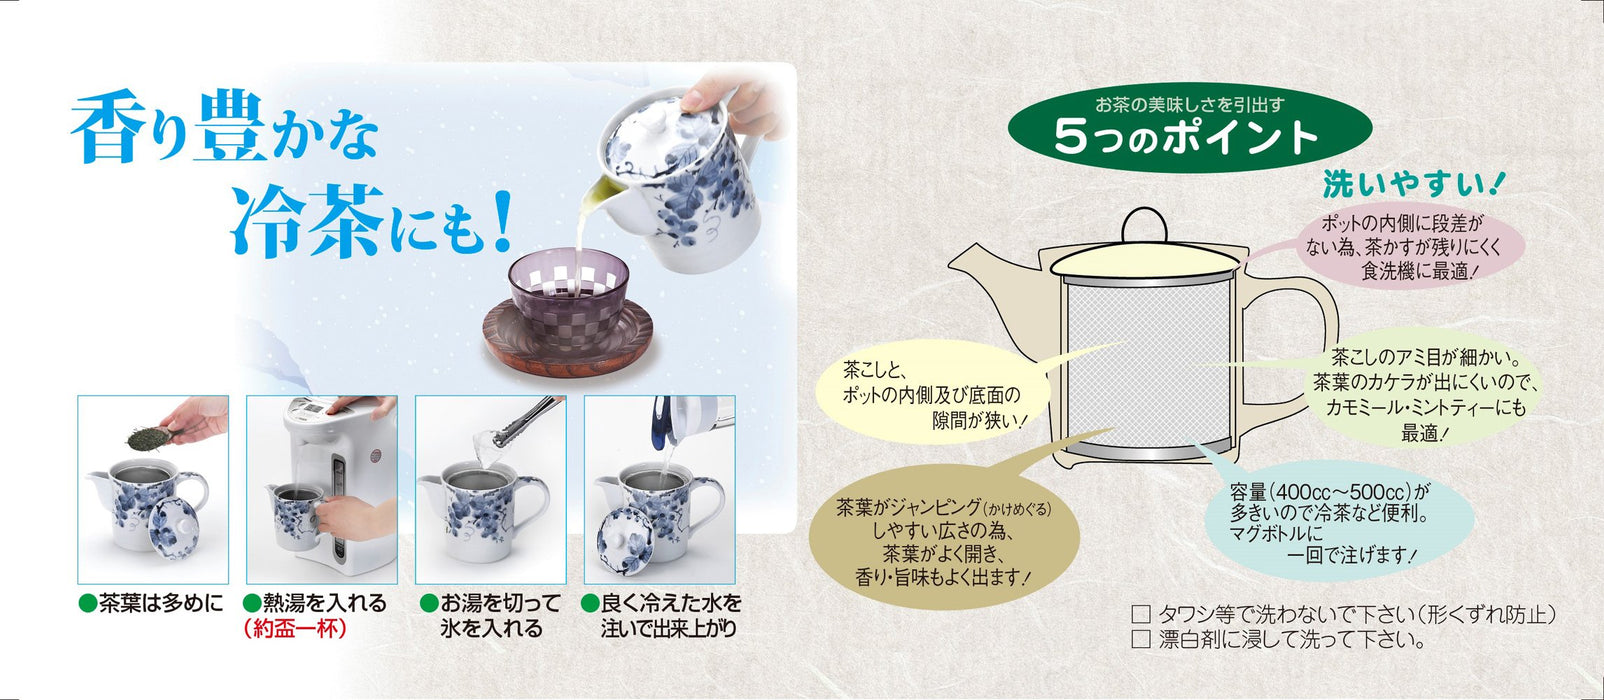 Itsumi Pottery 濑户烧 Hh 壶 Yakijime 大号，带圆柱形茶滤 042511 - 日本制造